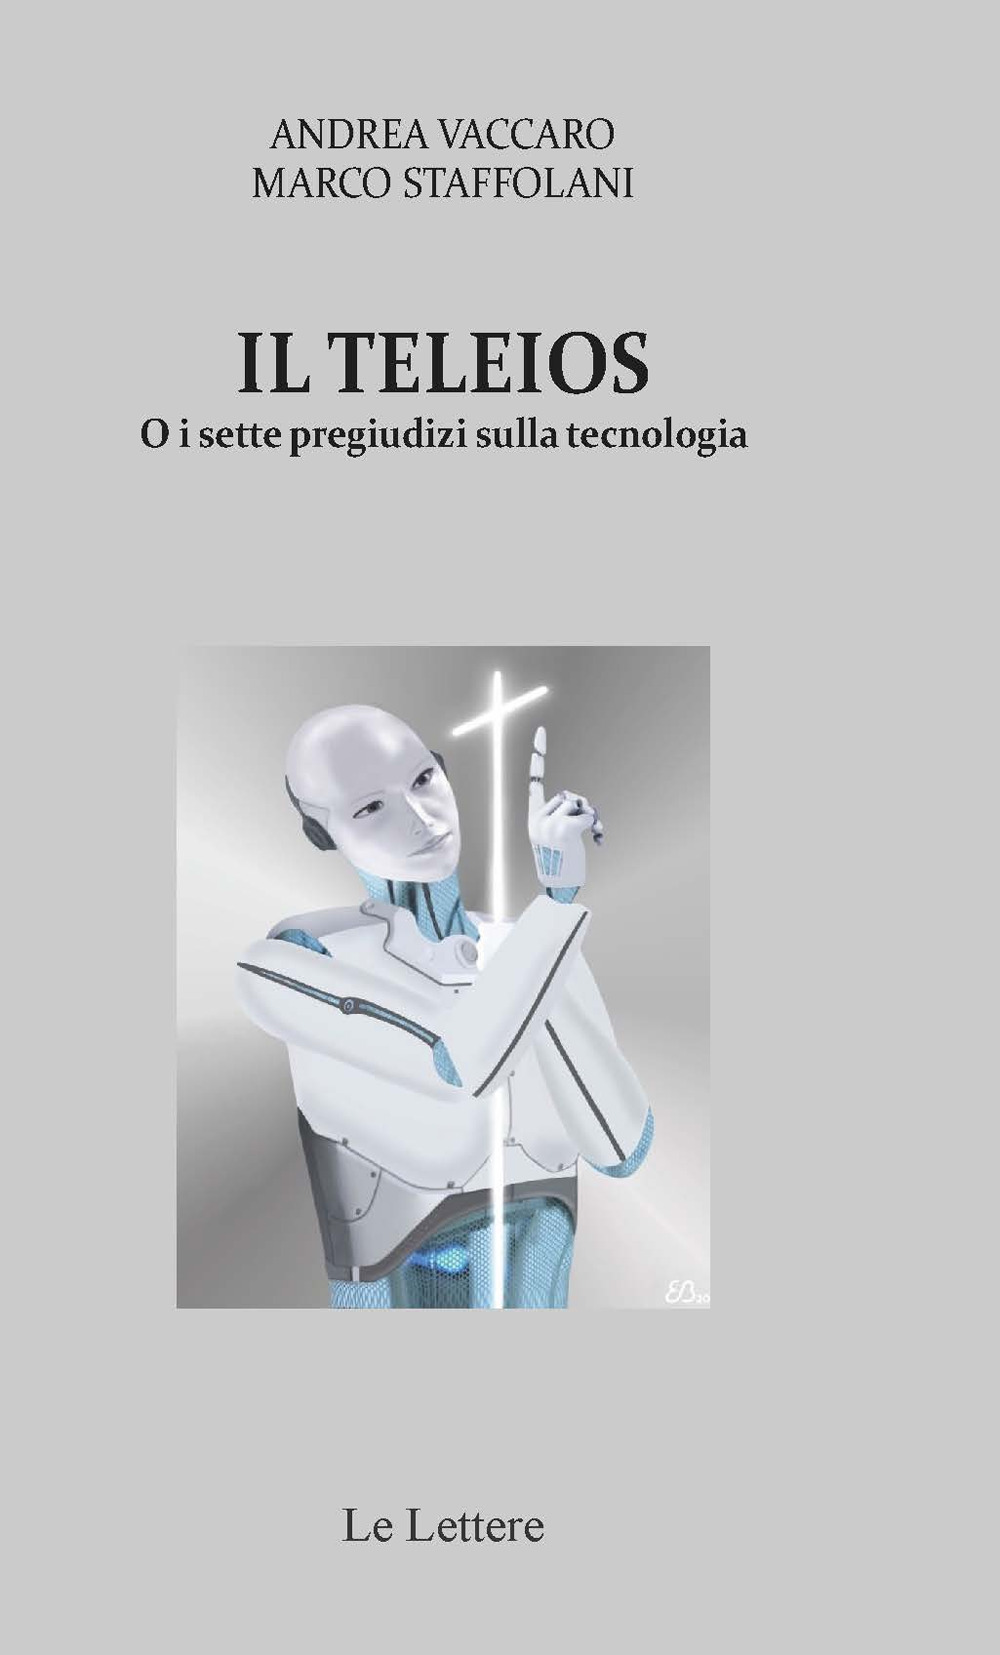 Il Teleios o i sette pregiudizi sulla tecnologia